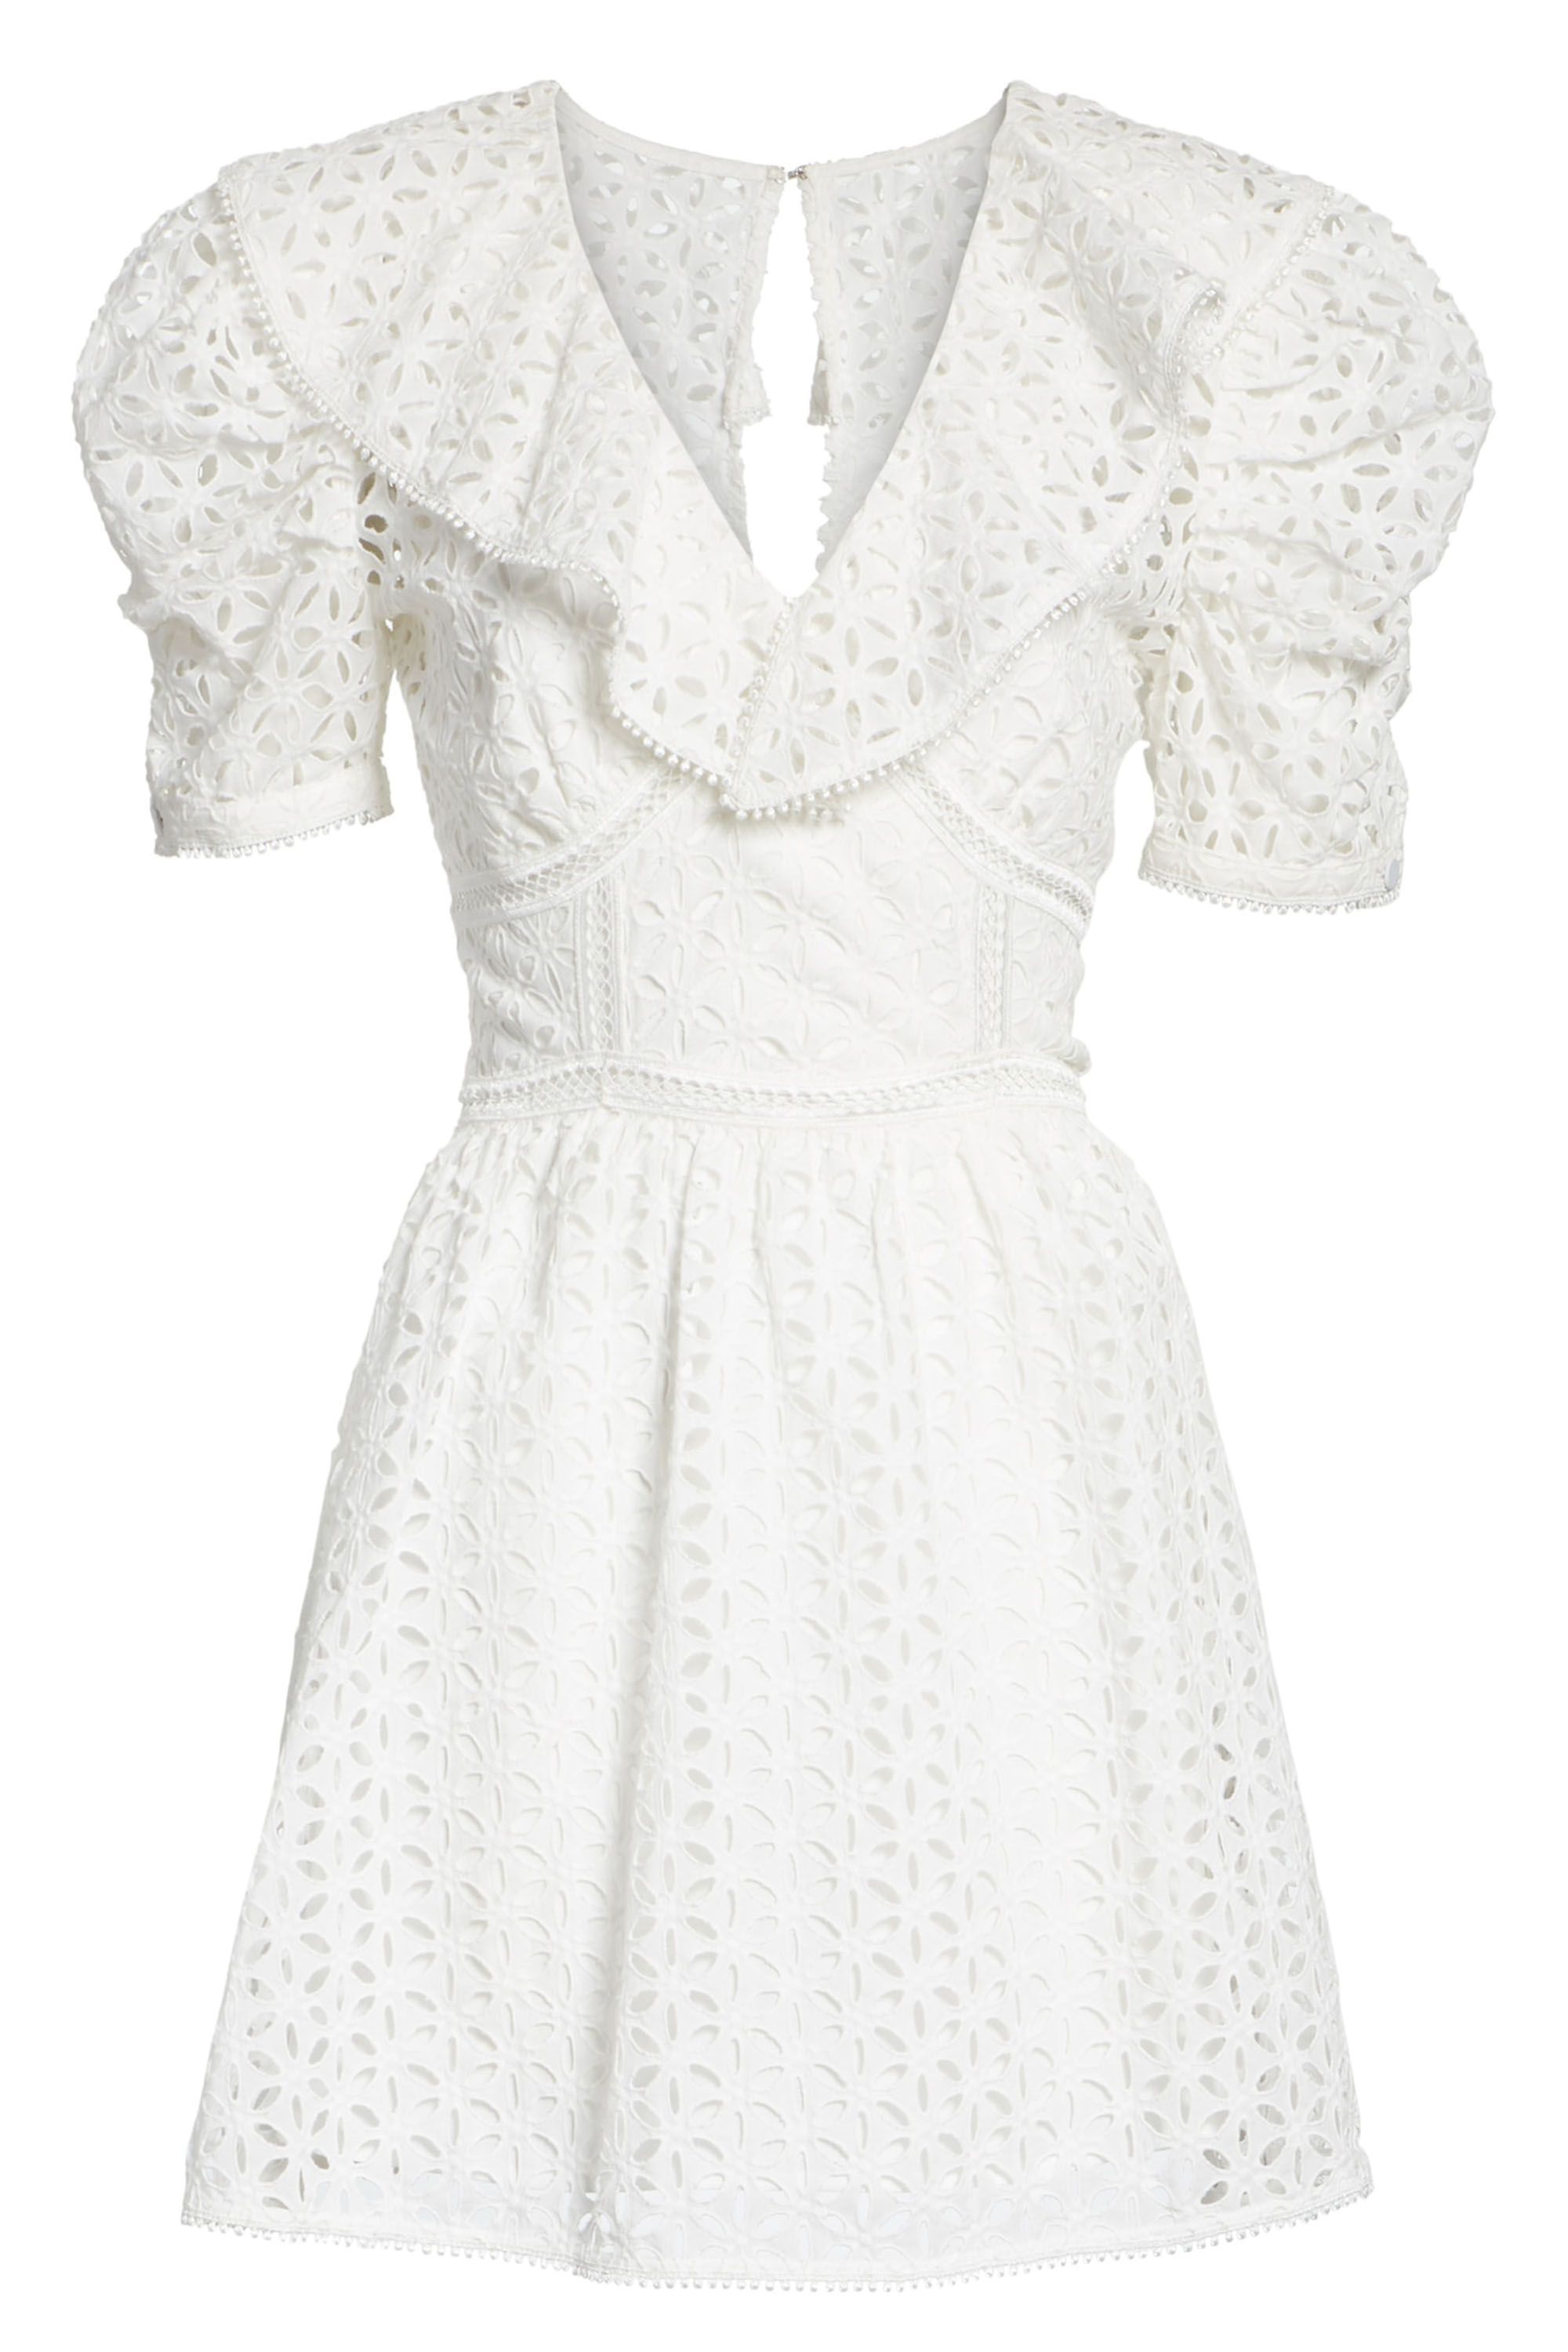 white summer formal dresses